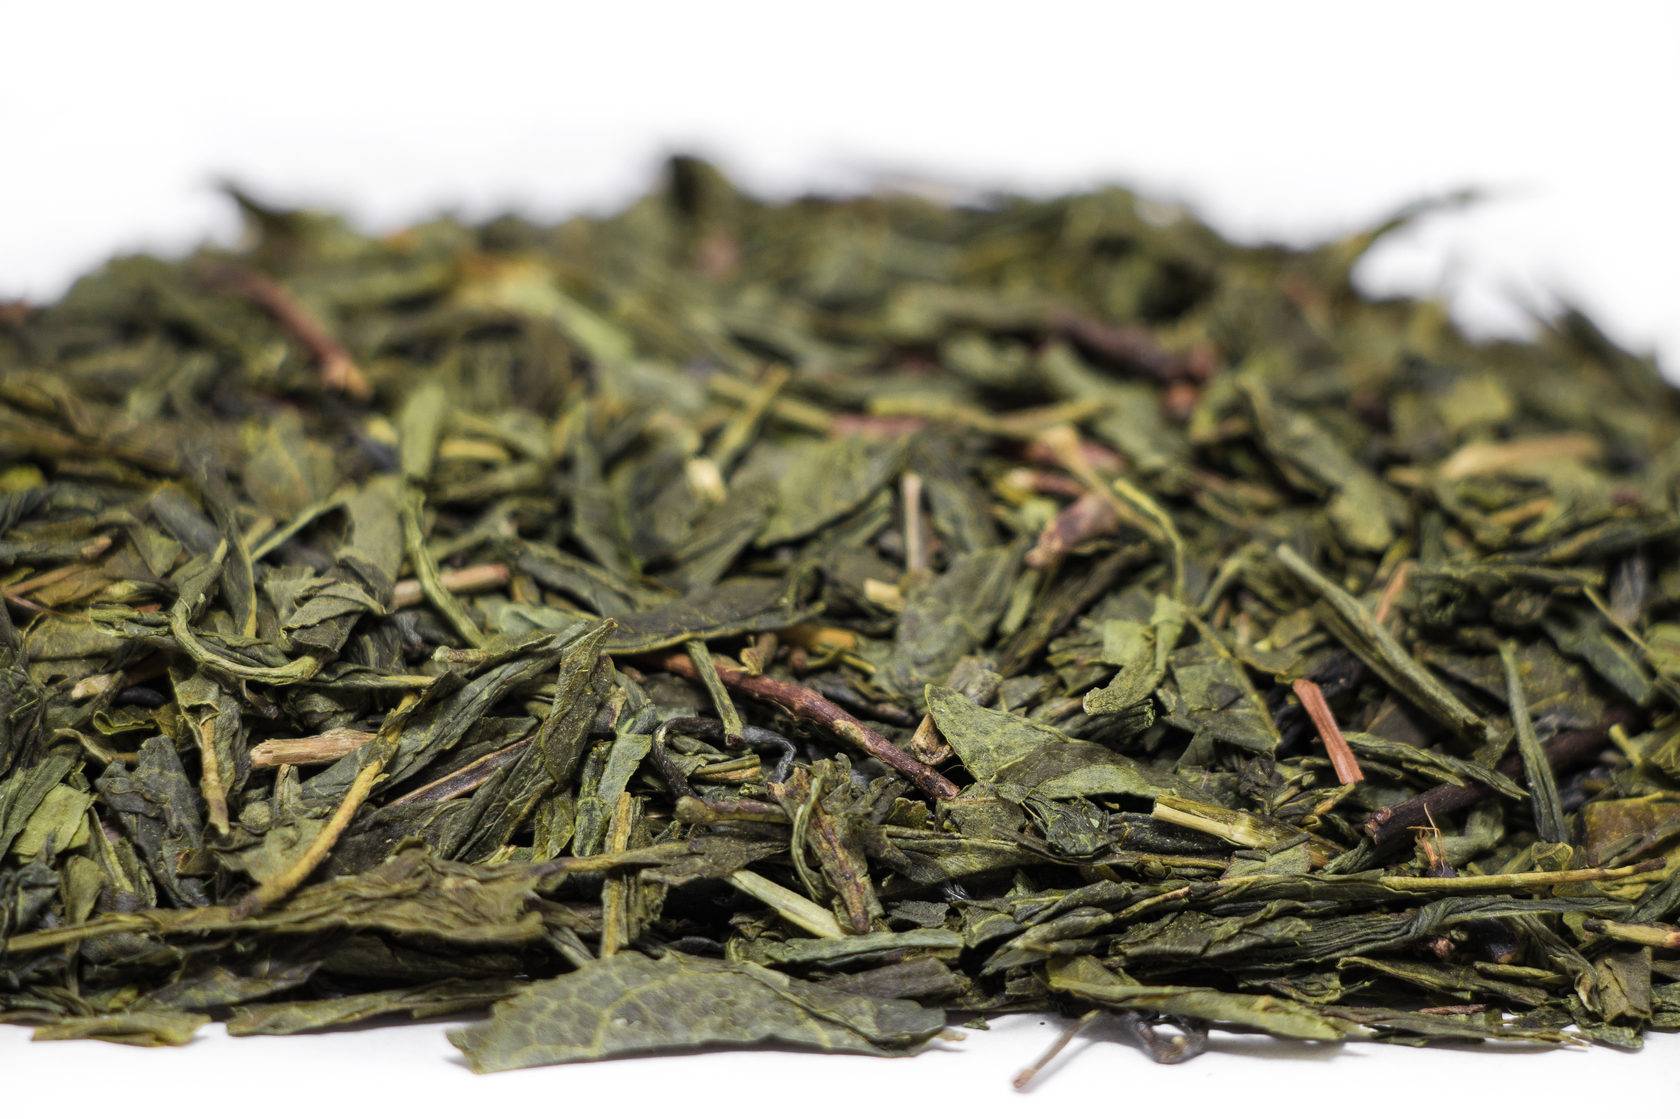 Напиток страны восходящего солнца. зеленый чай сенча: что это такое, описание напитка, его полезные лечебные свойства